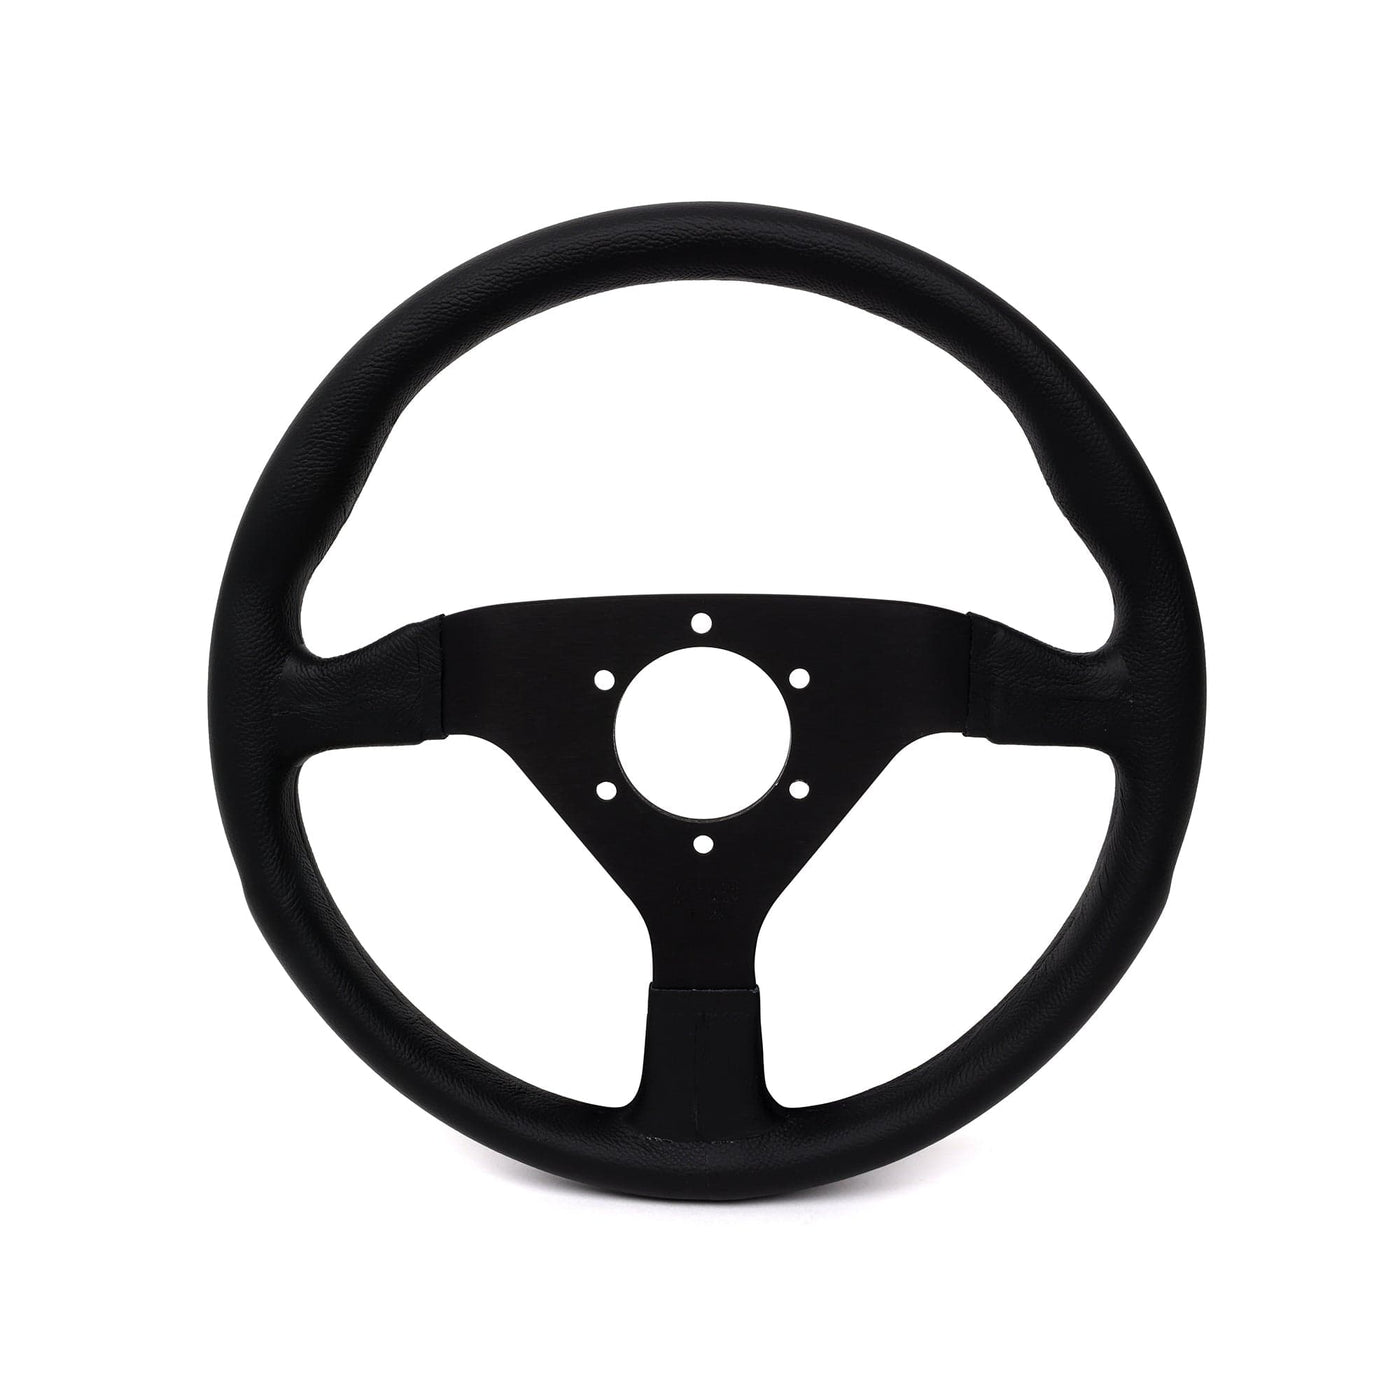 Momo Motorsports Steering Wheels Momo MOD78 Leather Steering Wheel 320 mm - Black/Black Spokes